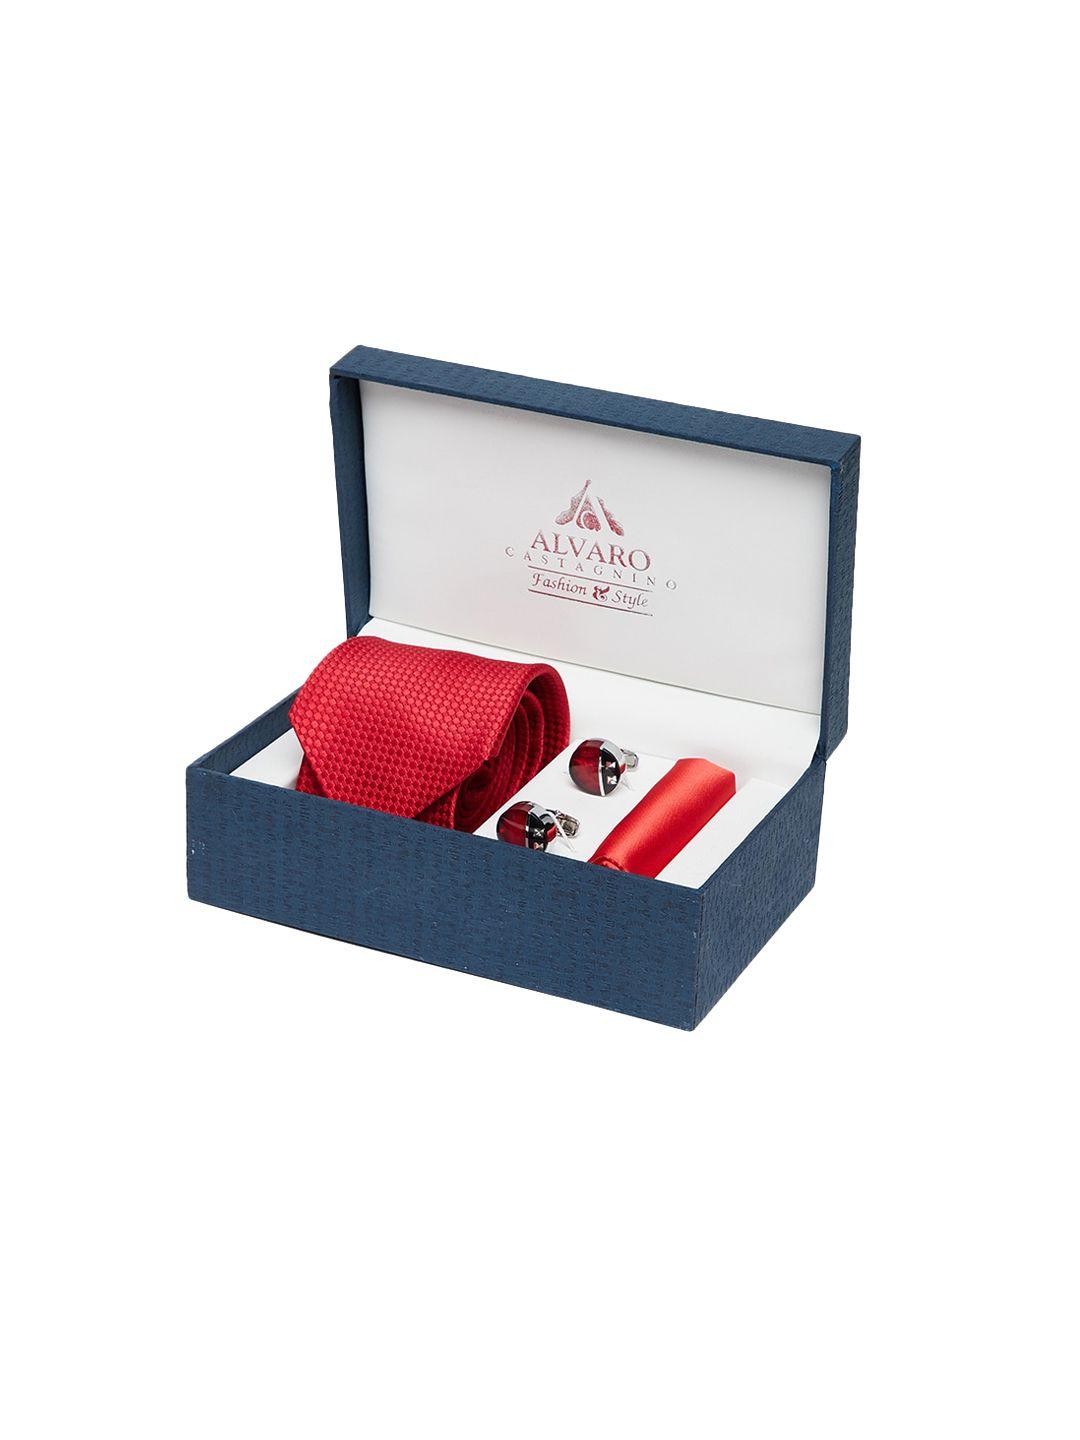 alvaro castagnino men red accessory gift set